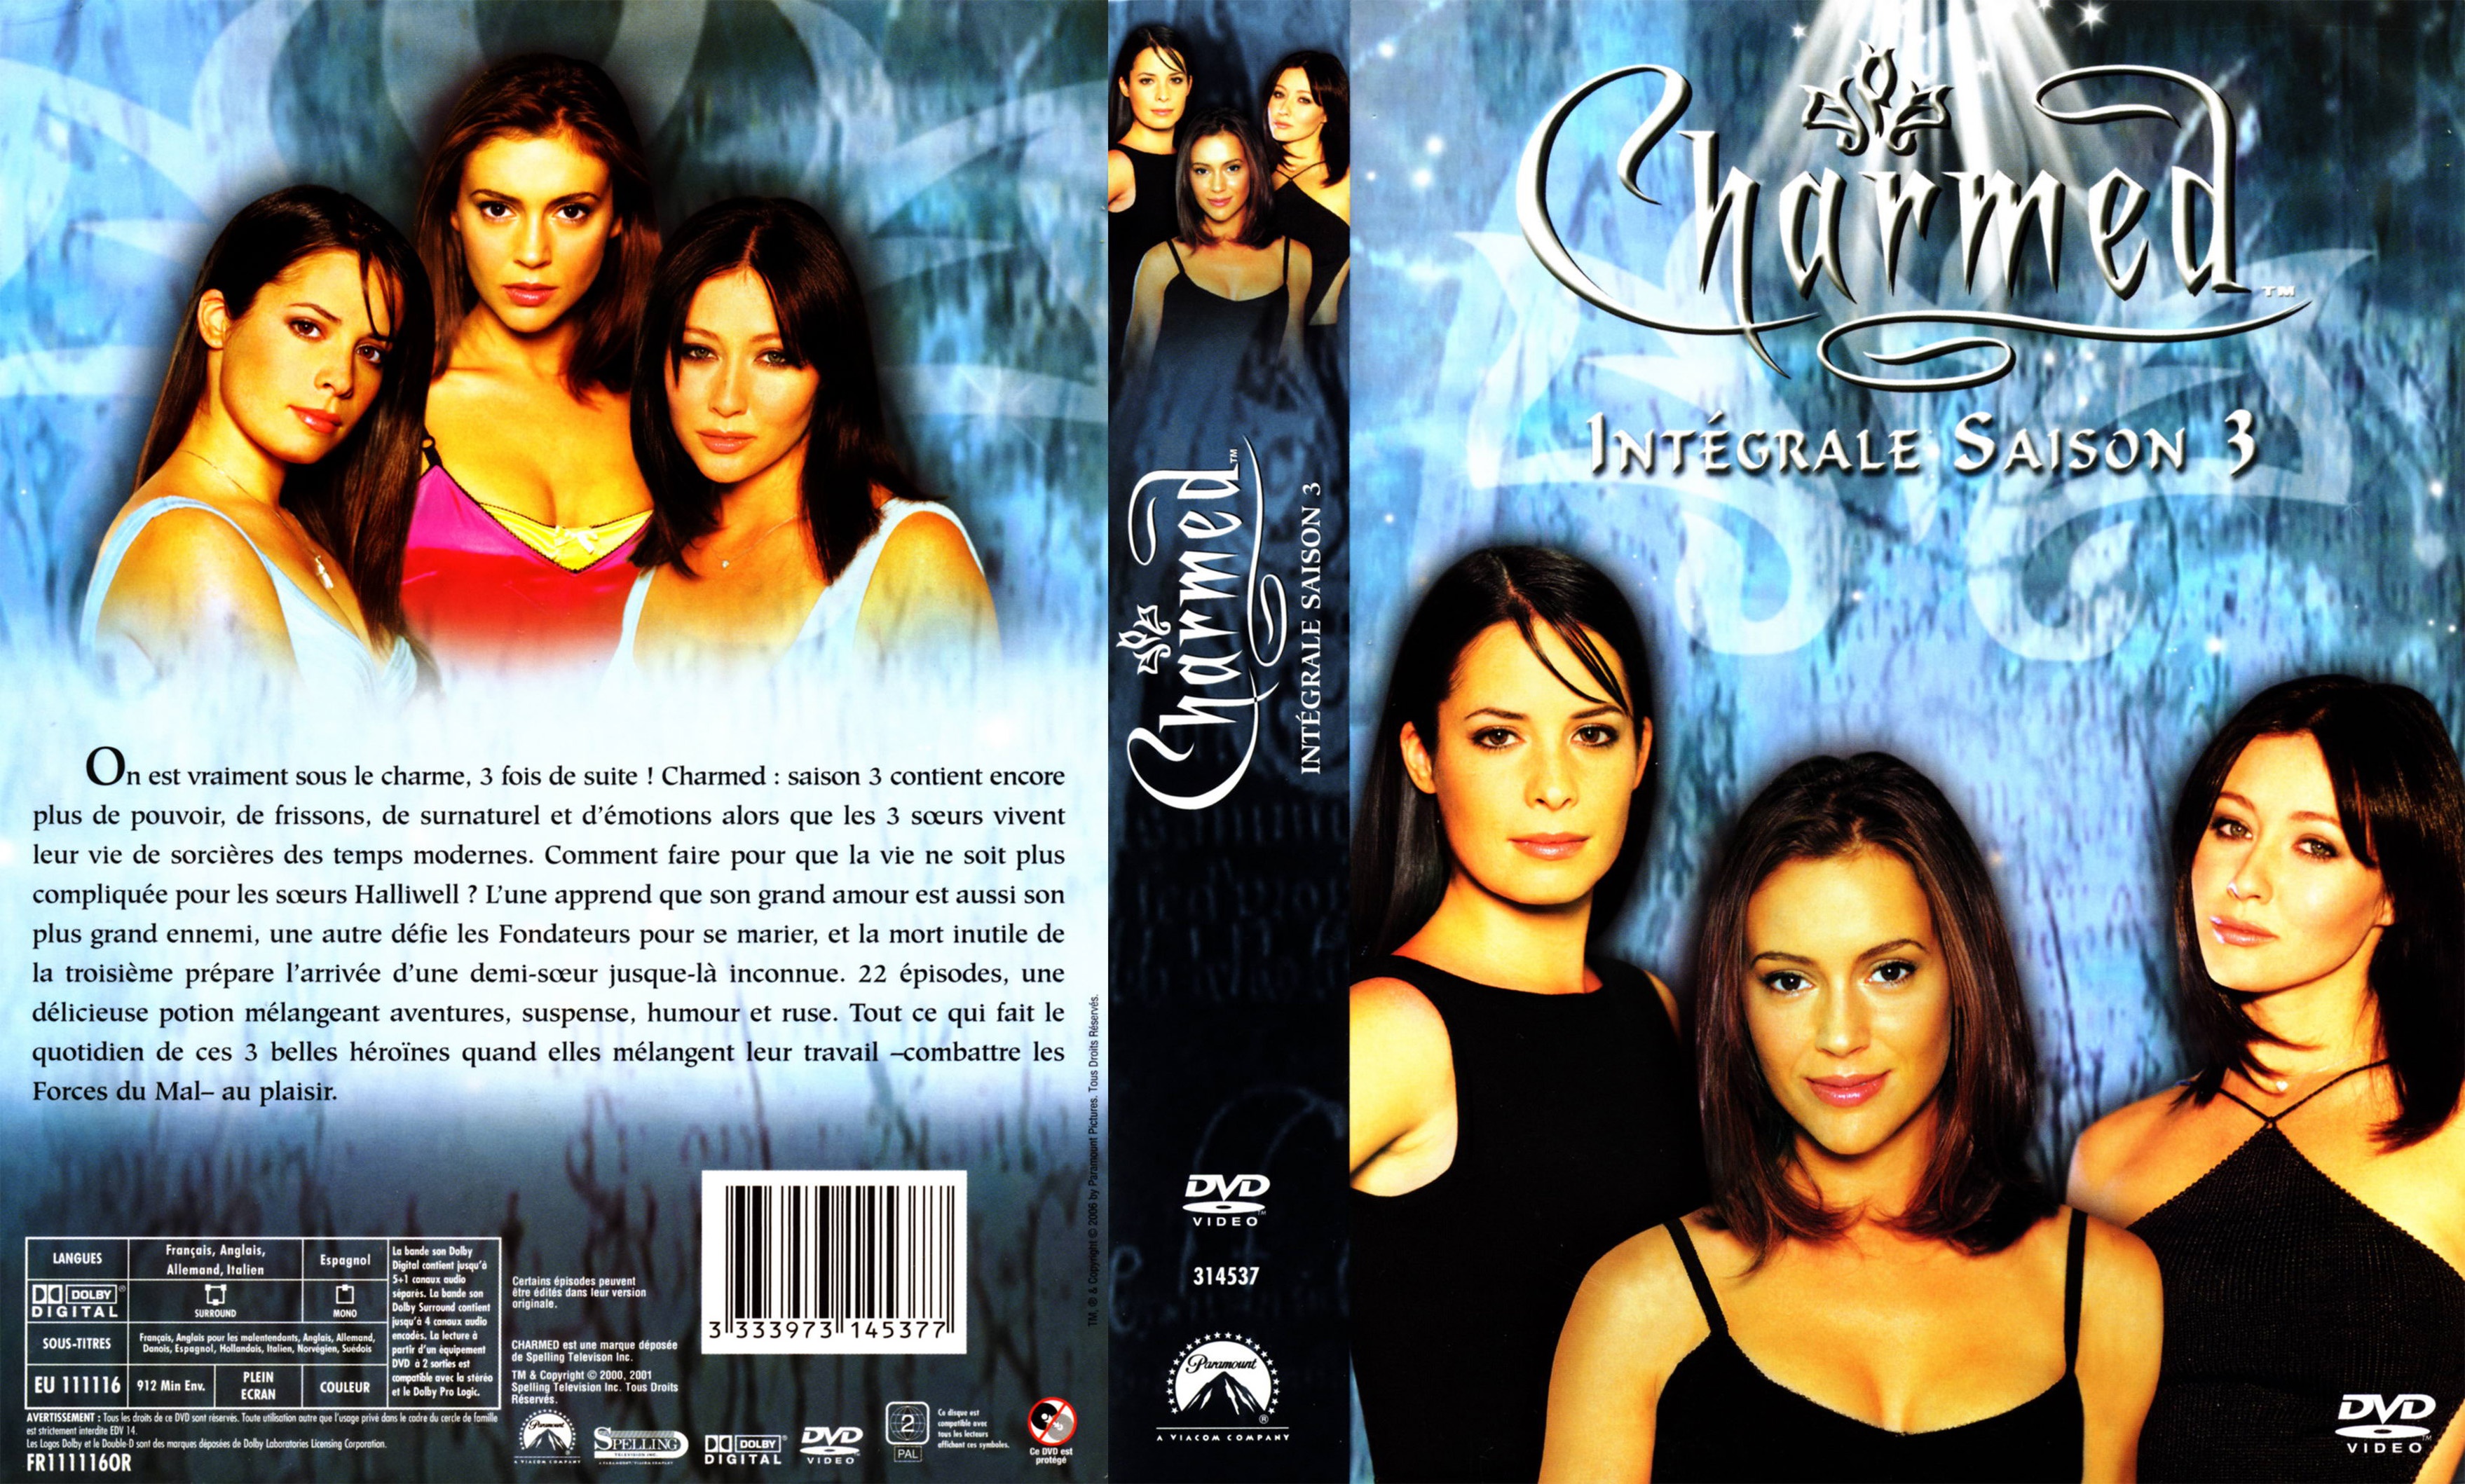 Jaquette DVD Charmed Saison 3 COFFRET v2